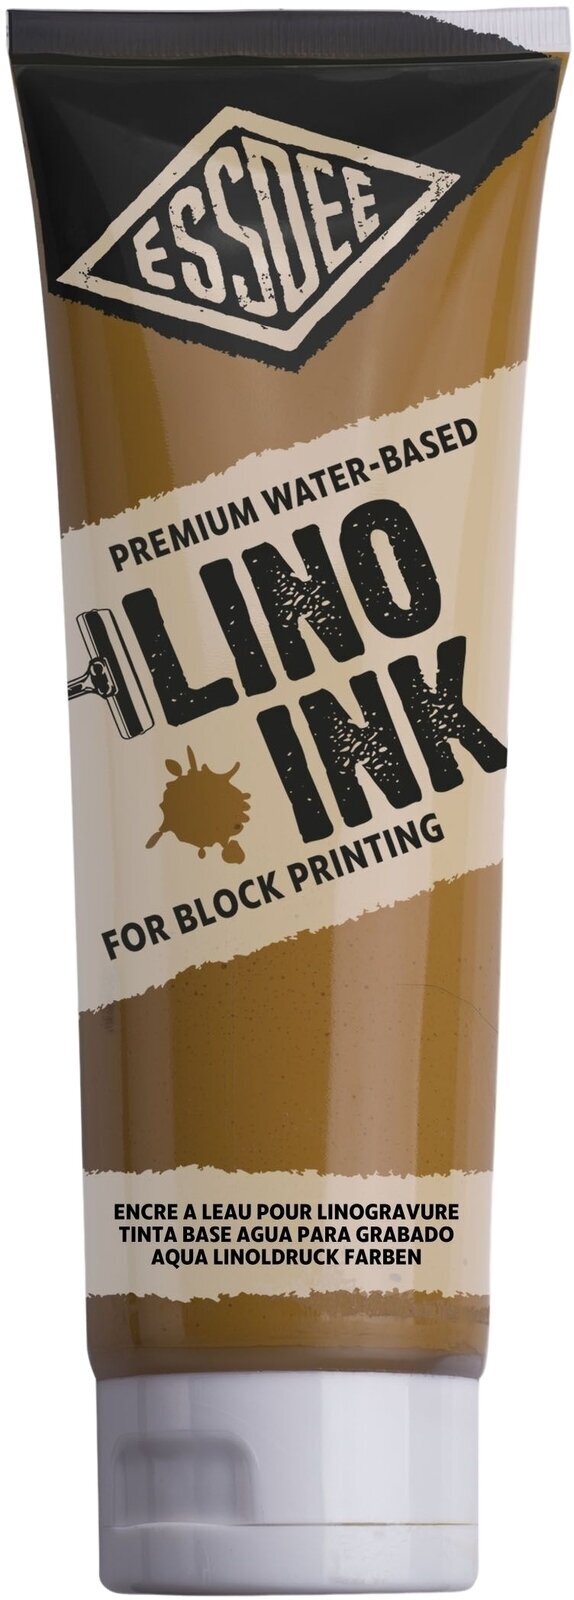 Tinta para linogravura Essdee Block Printing Ink Tinta para linogravura Yellow Ochre 300 ml